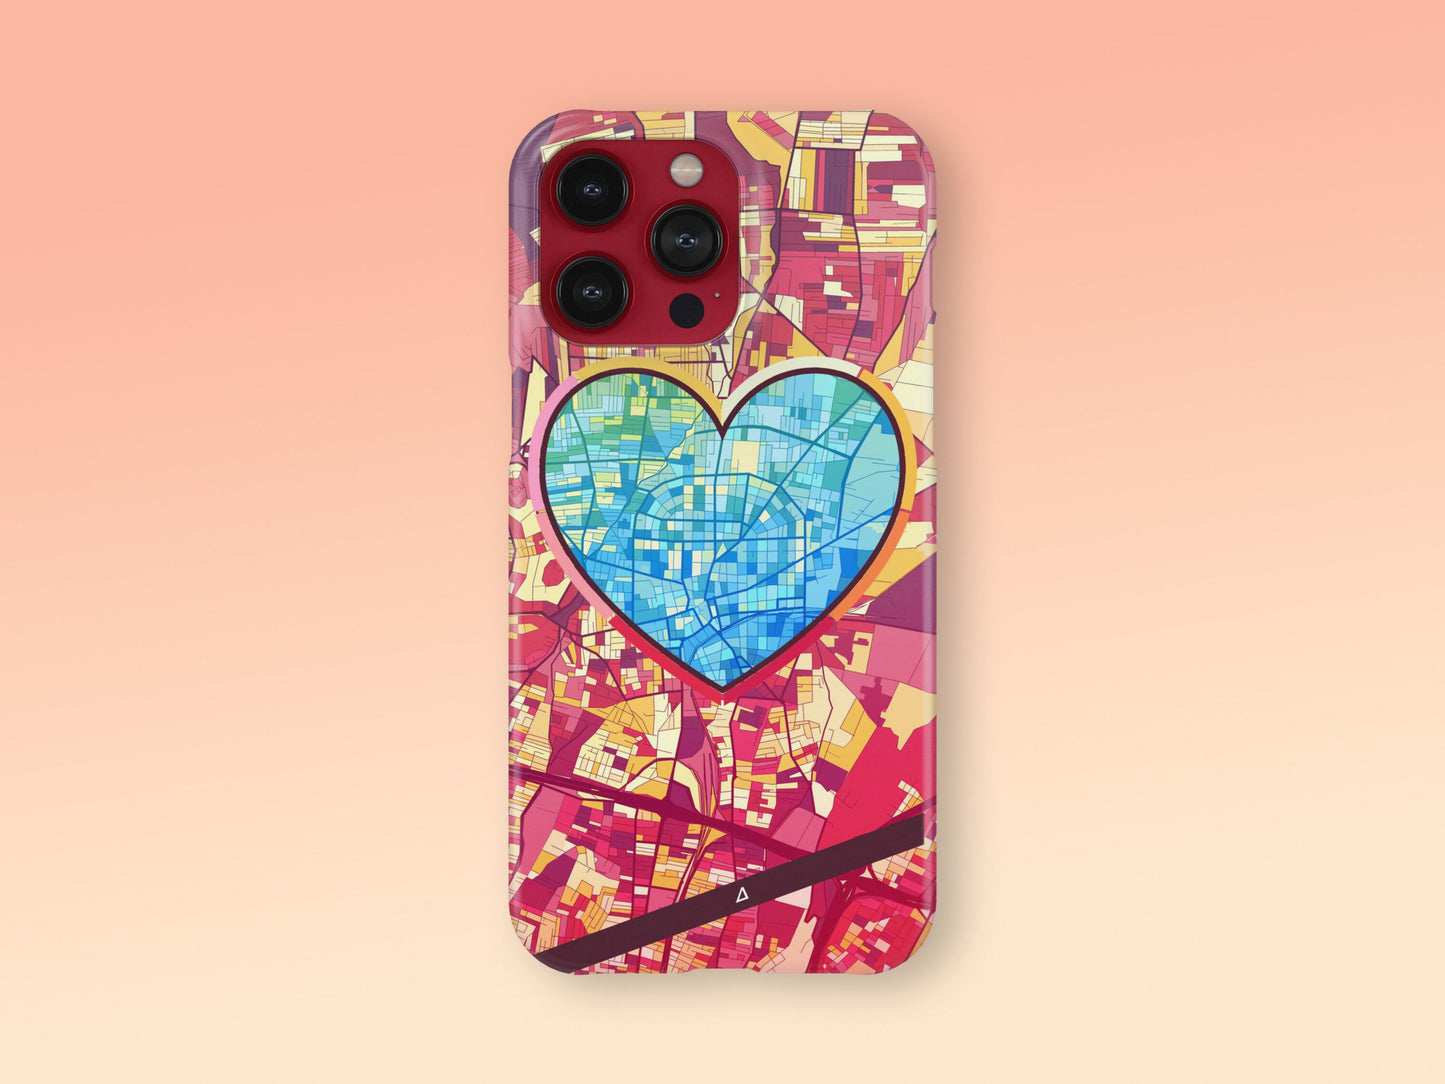 Αχαρνες Ελλαδα slim phone case with colorful icon. Birthday, wedding or housewarming gift. Couple match cases. 2